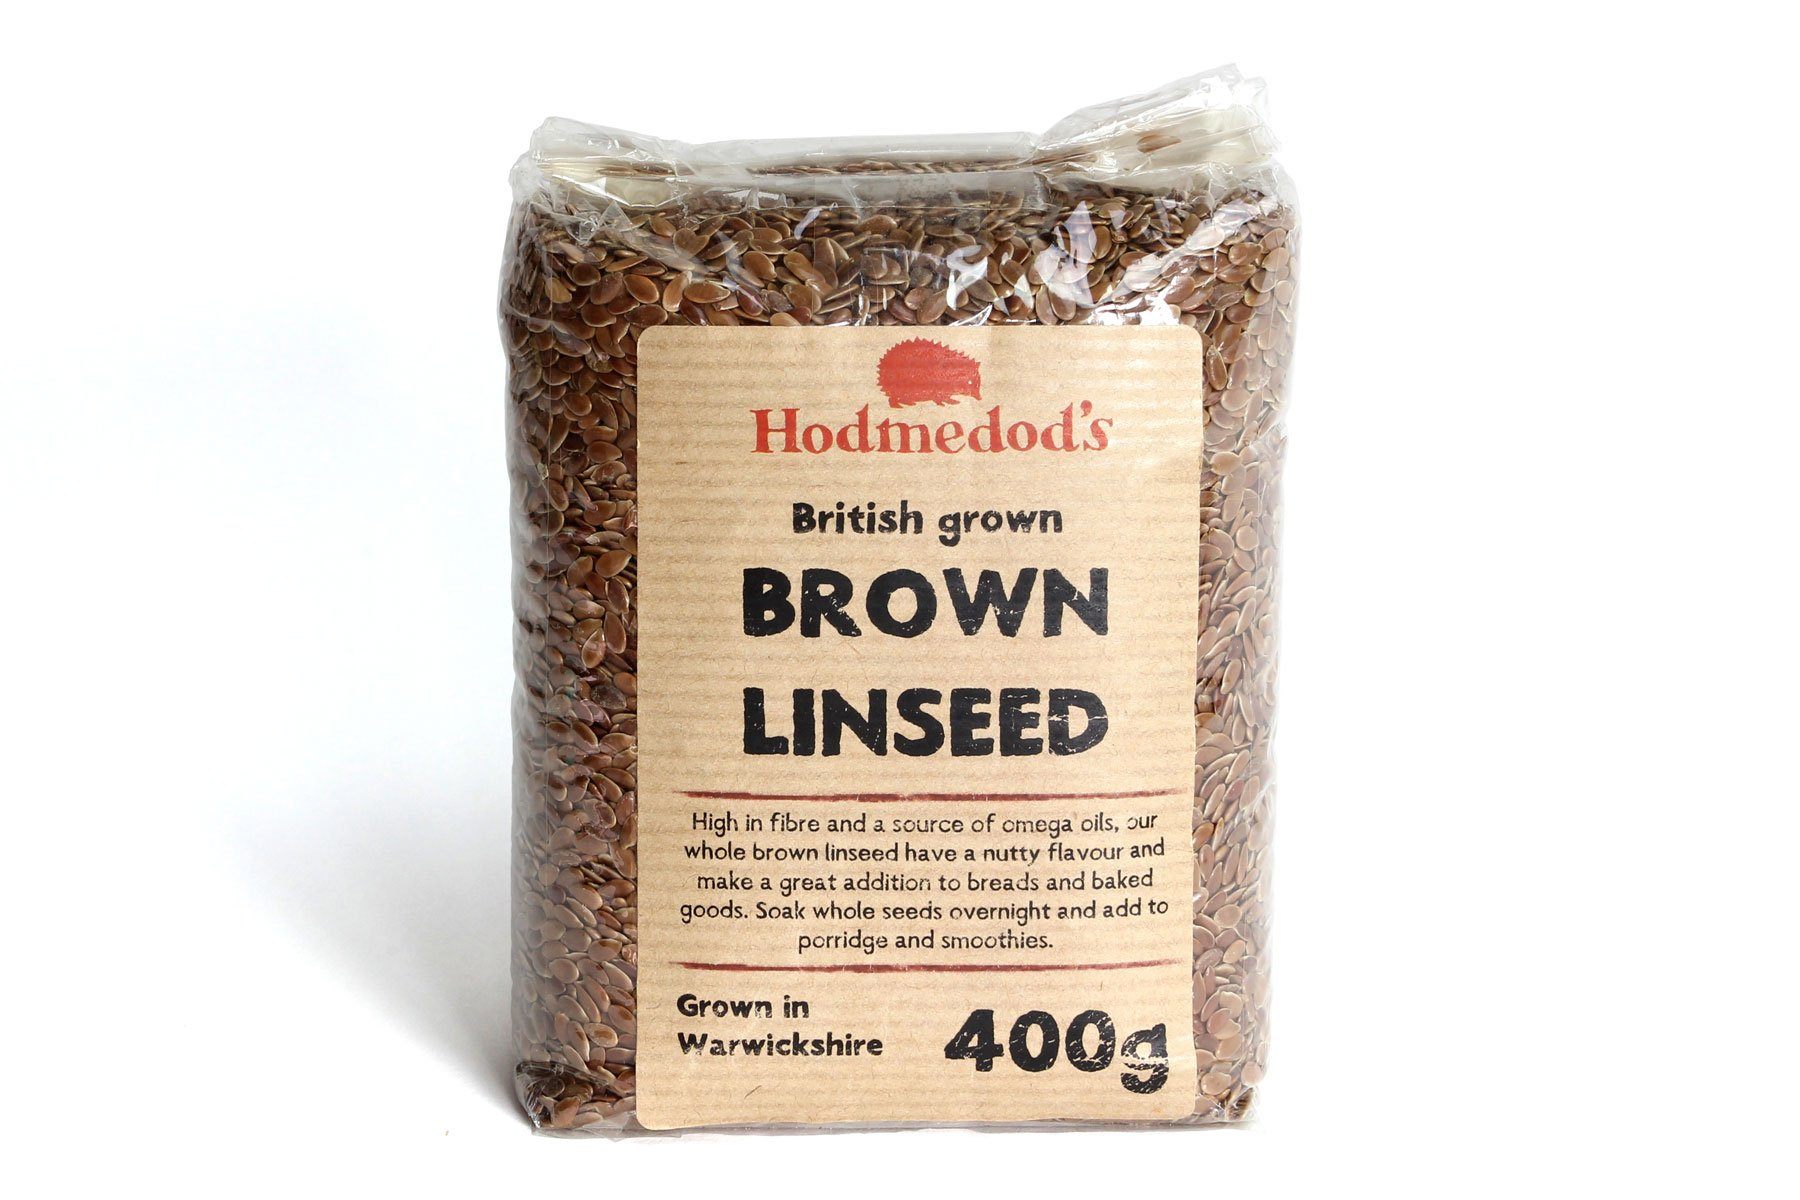 Brown Linseed - Hodmedod's British Pulses & Grains